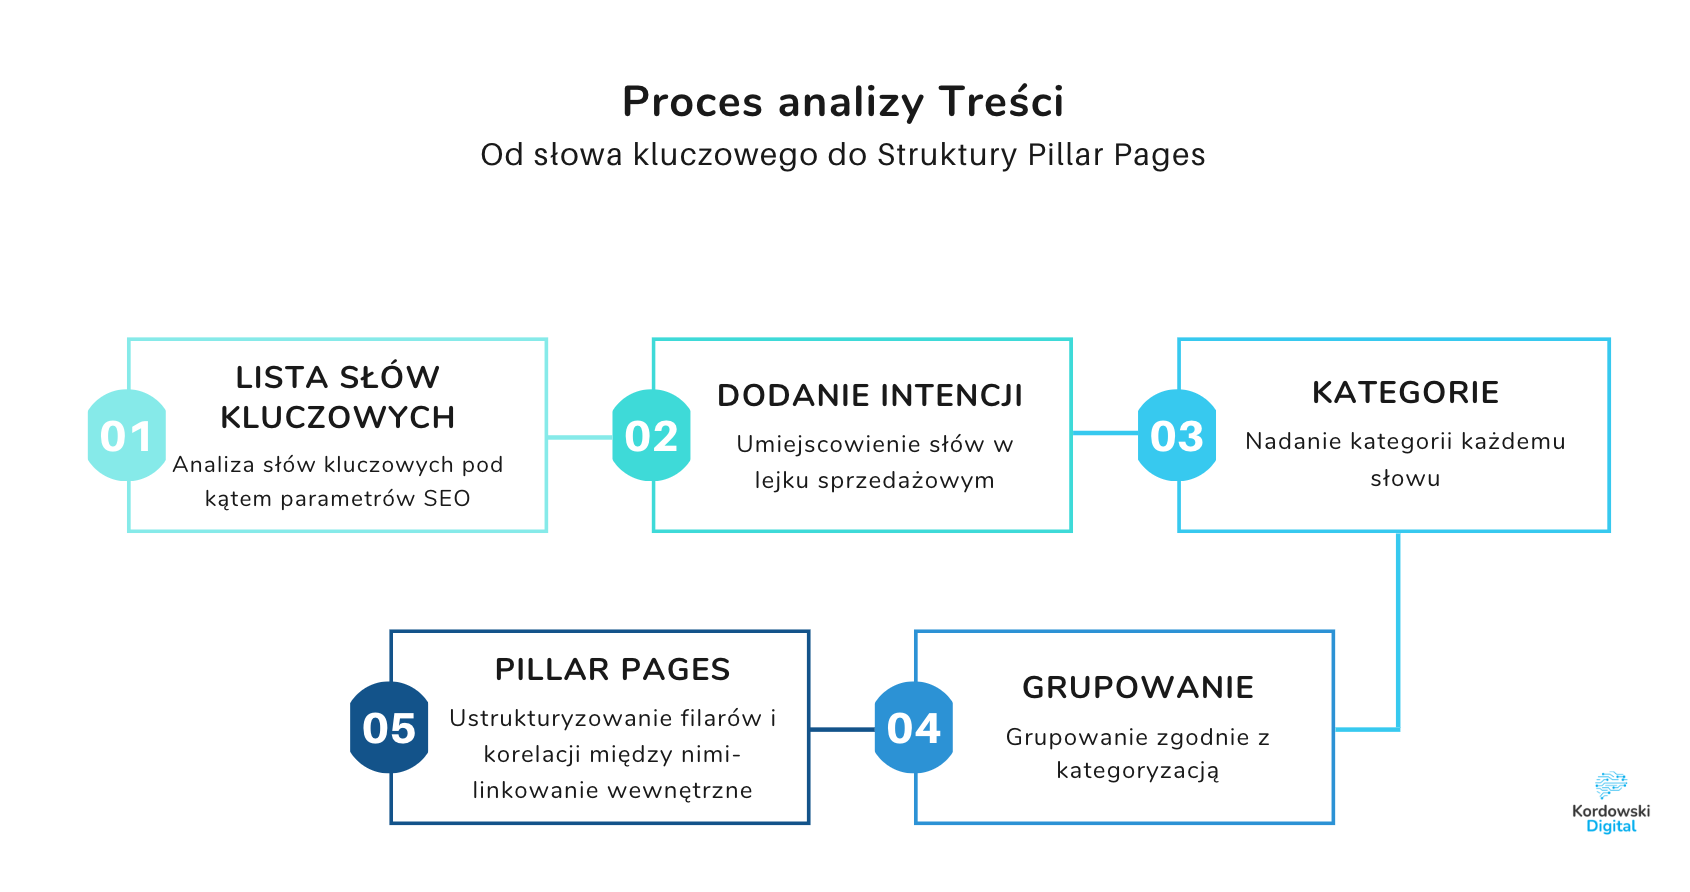 Proces analizy treści a strategia Pillar Pages